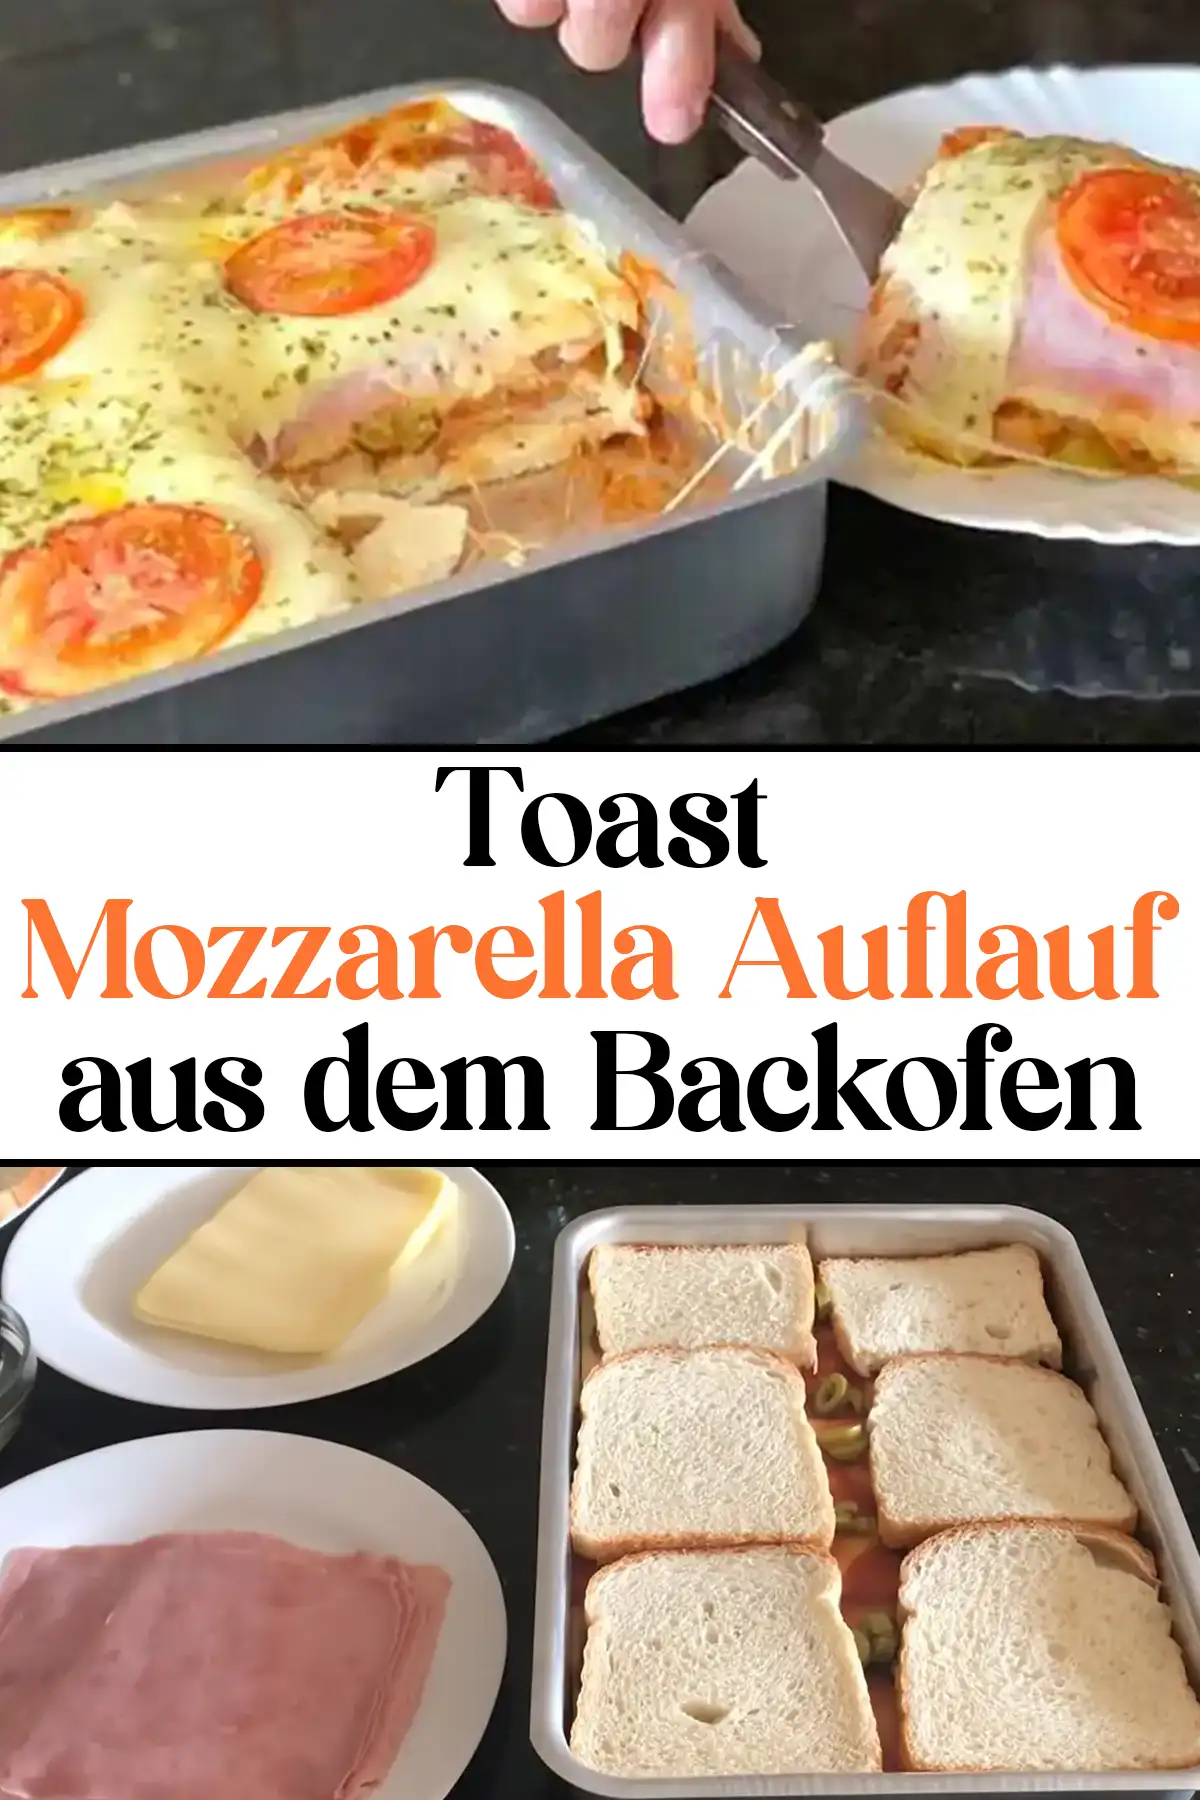 Toast Mozzarella Auflauf aus dem Backofen Rezept